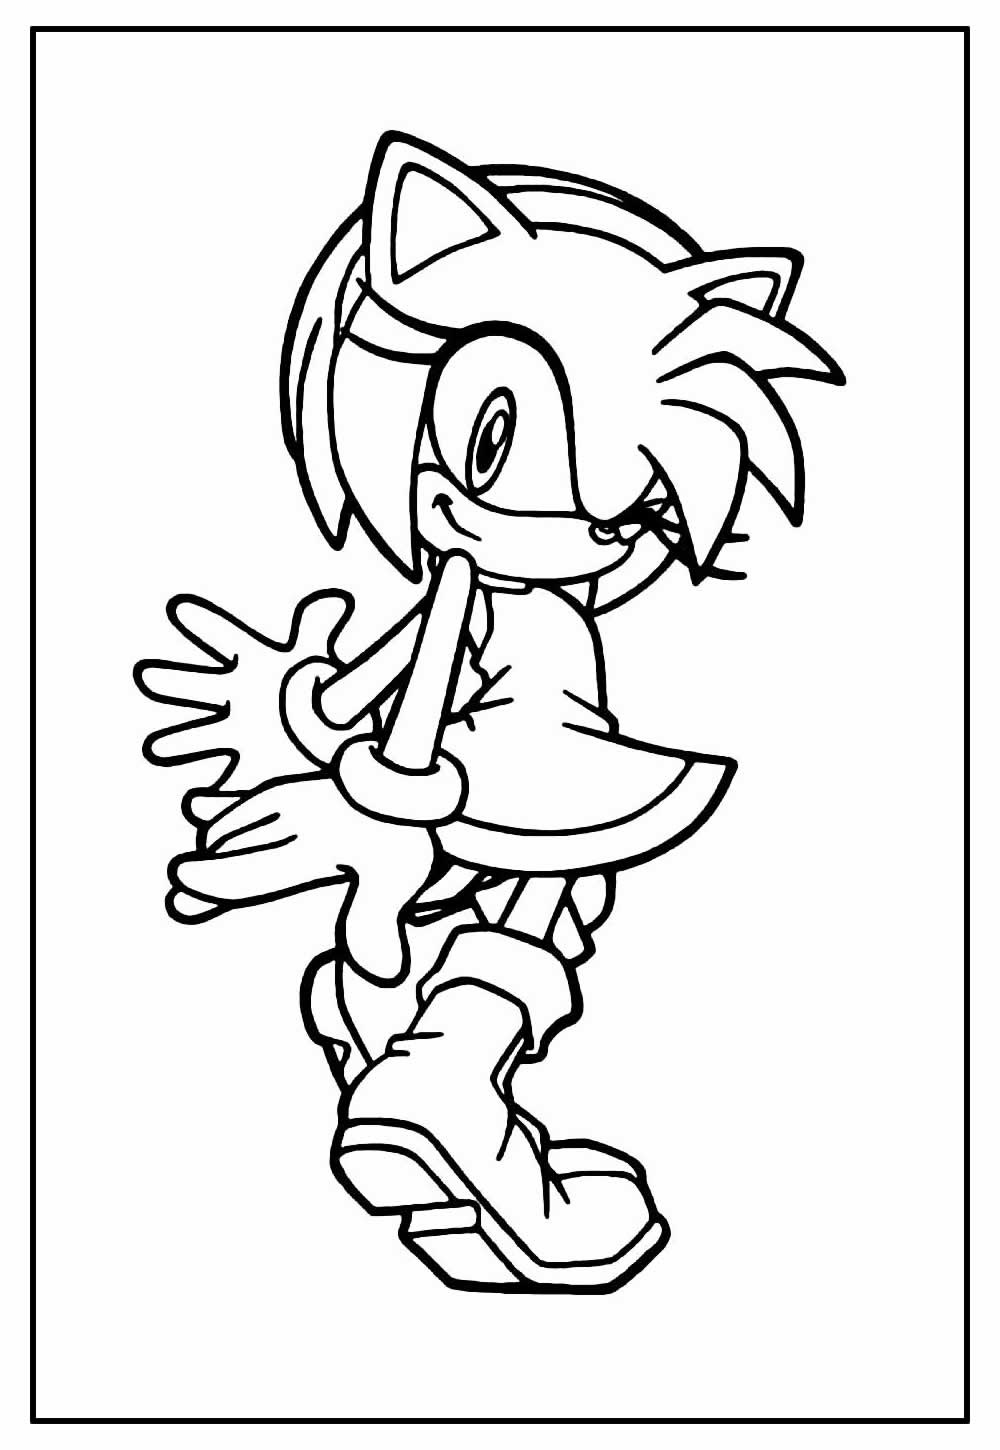 Desenhos de Sonic Sorrindo para Colorir e Imprimir 